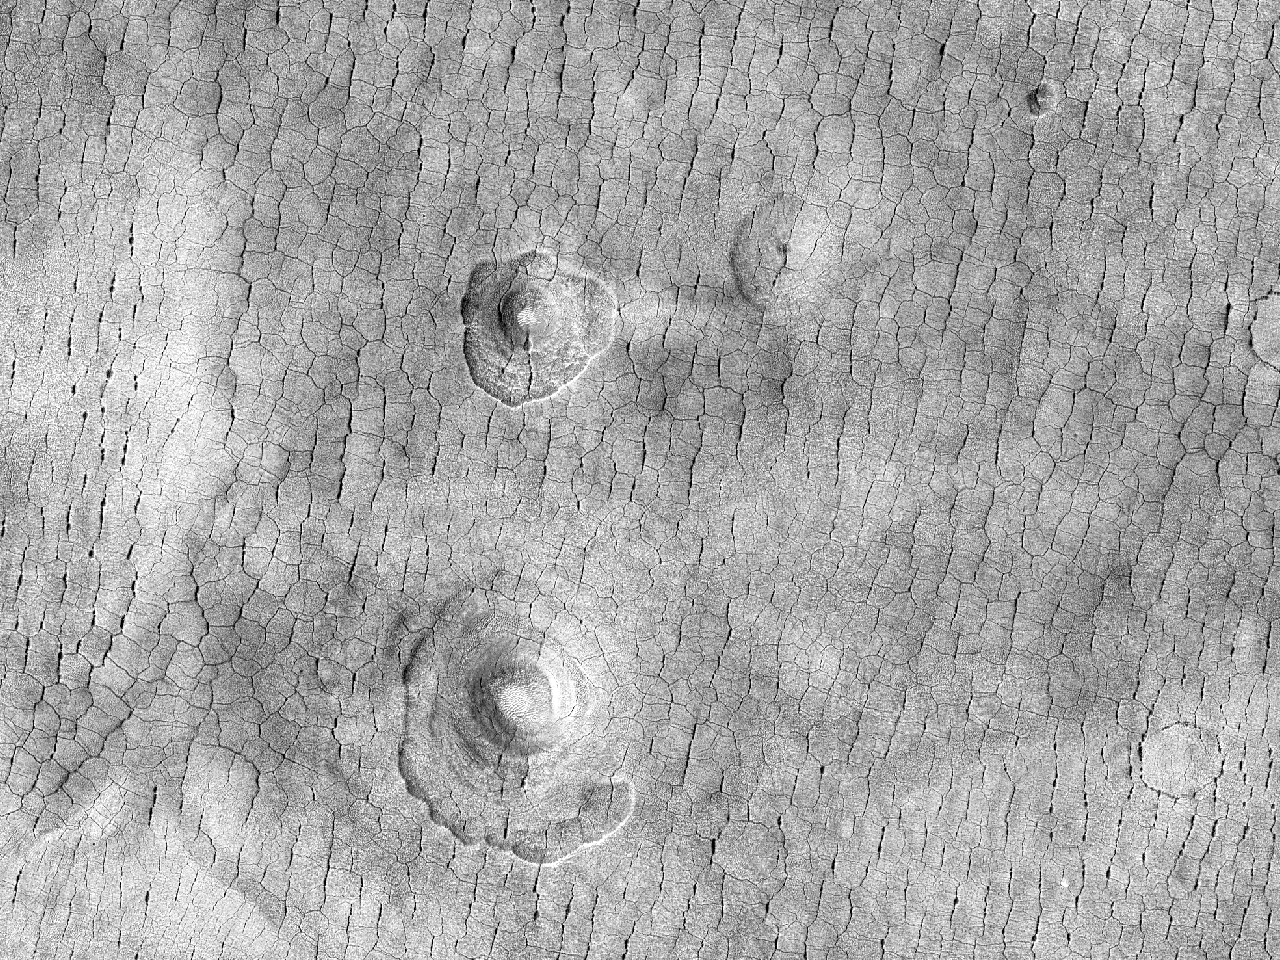 Mutati crateres in Utopia Planitie